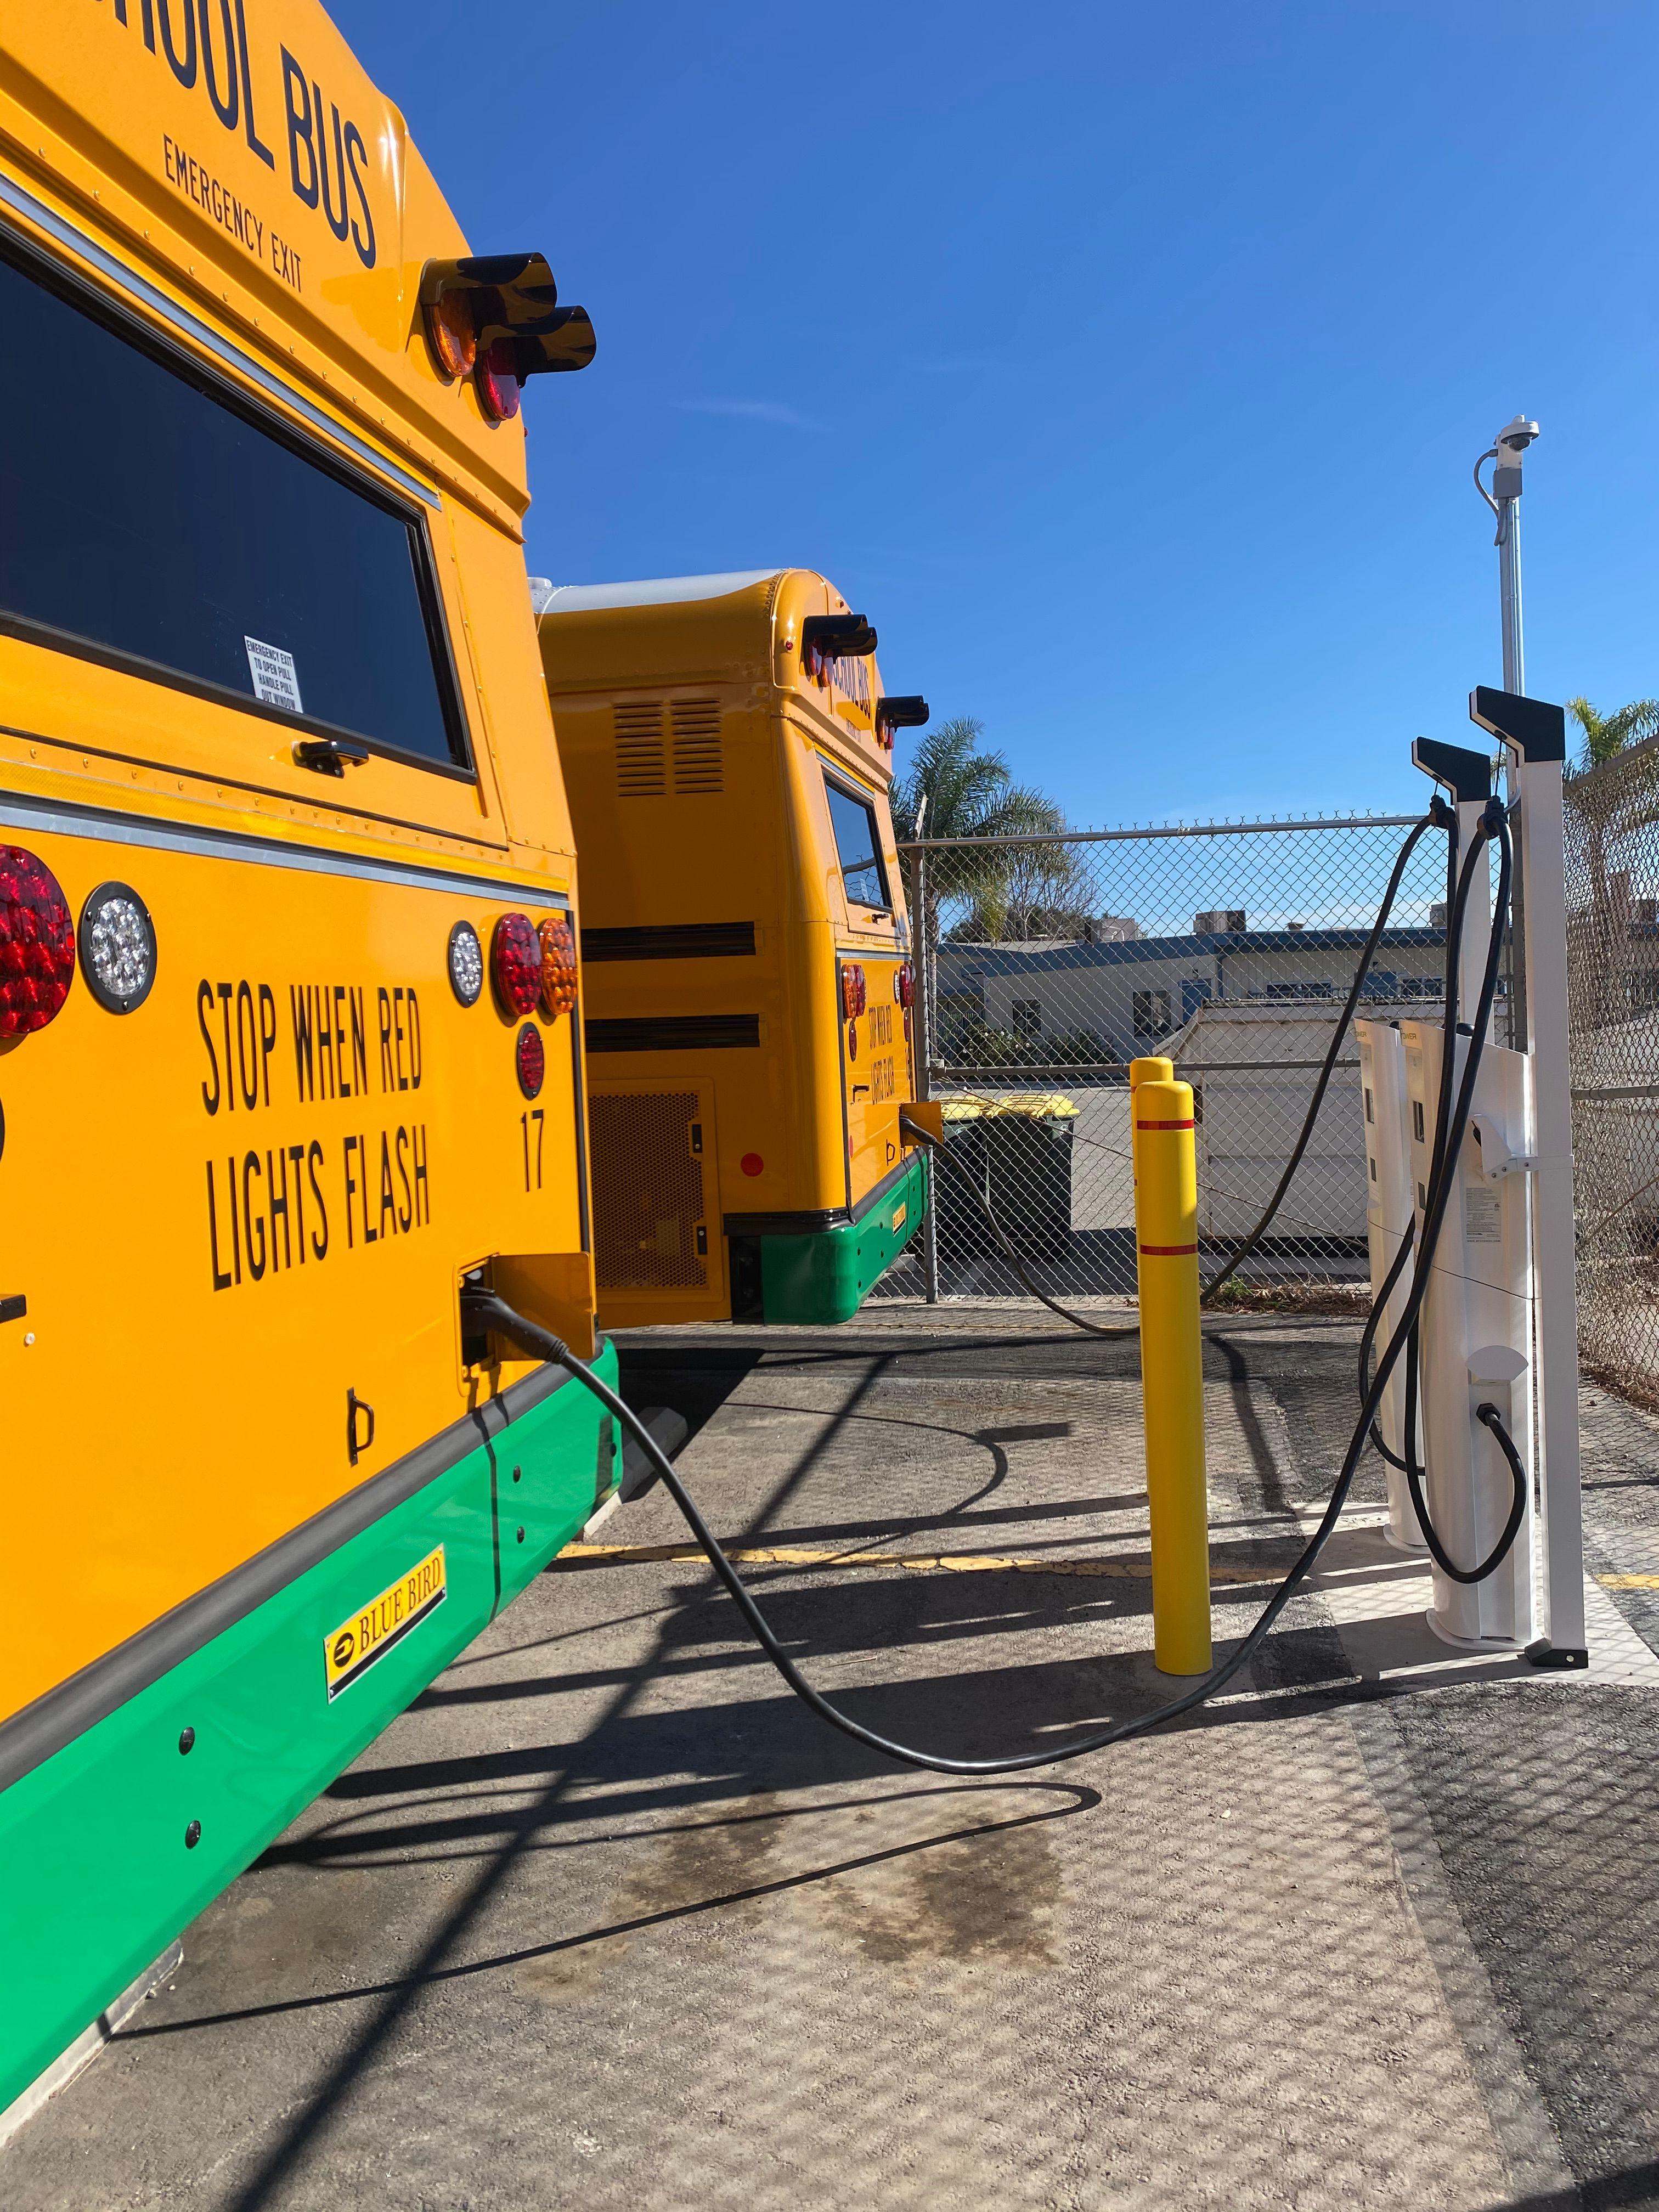 Ocean View School Buses charging